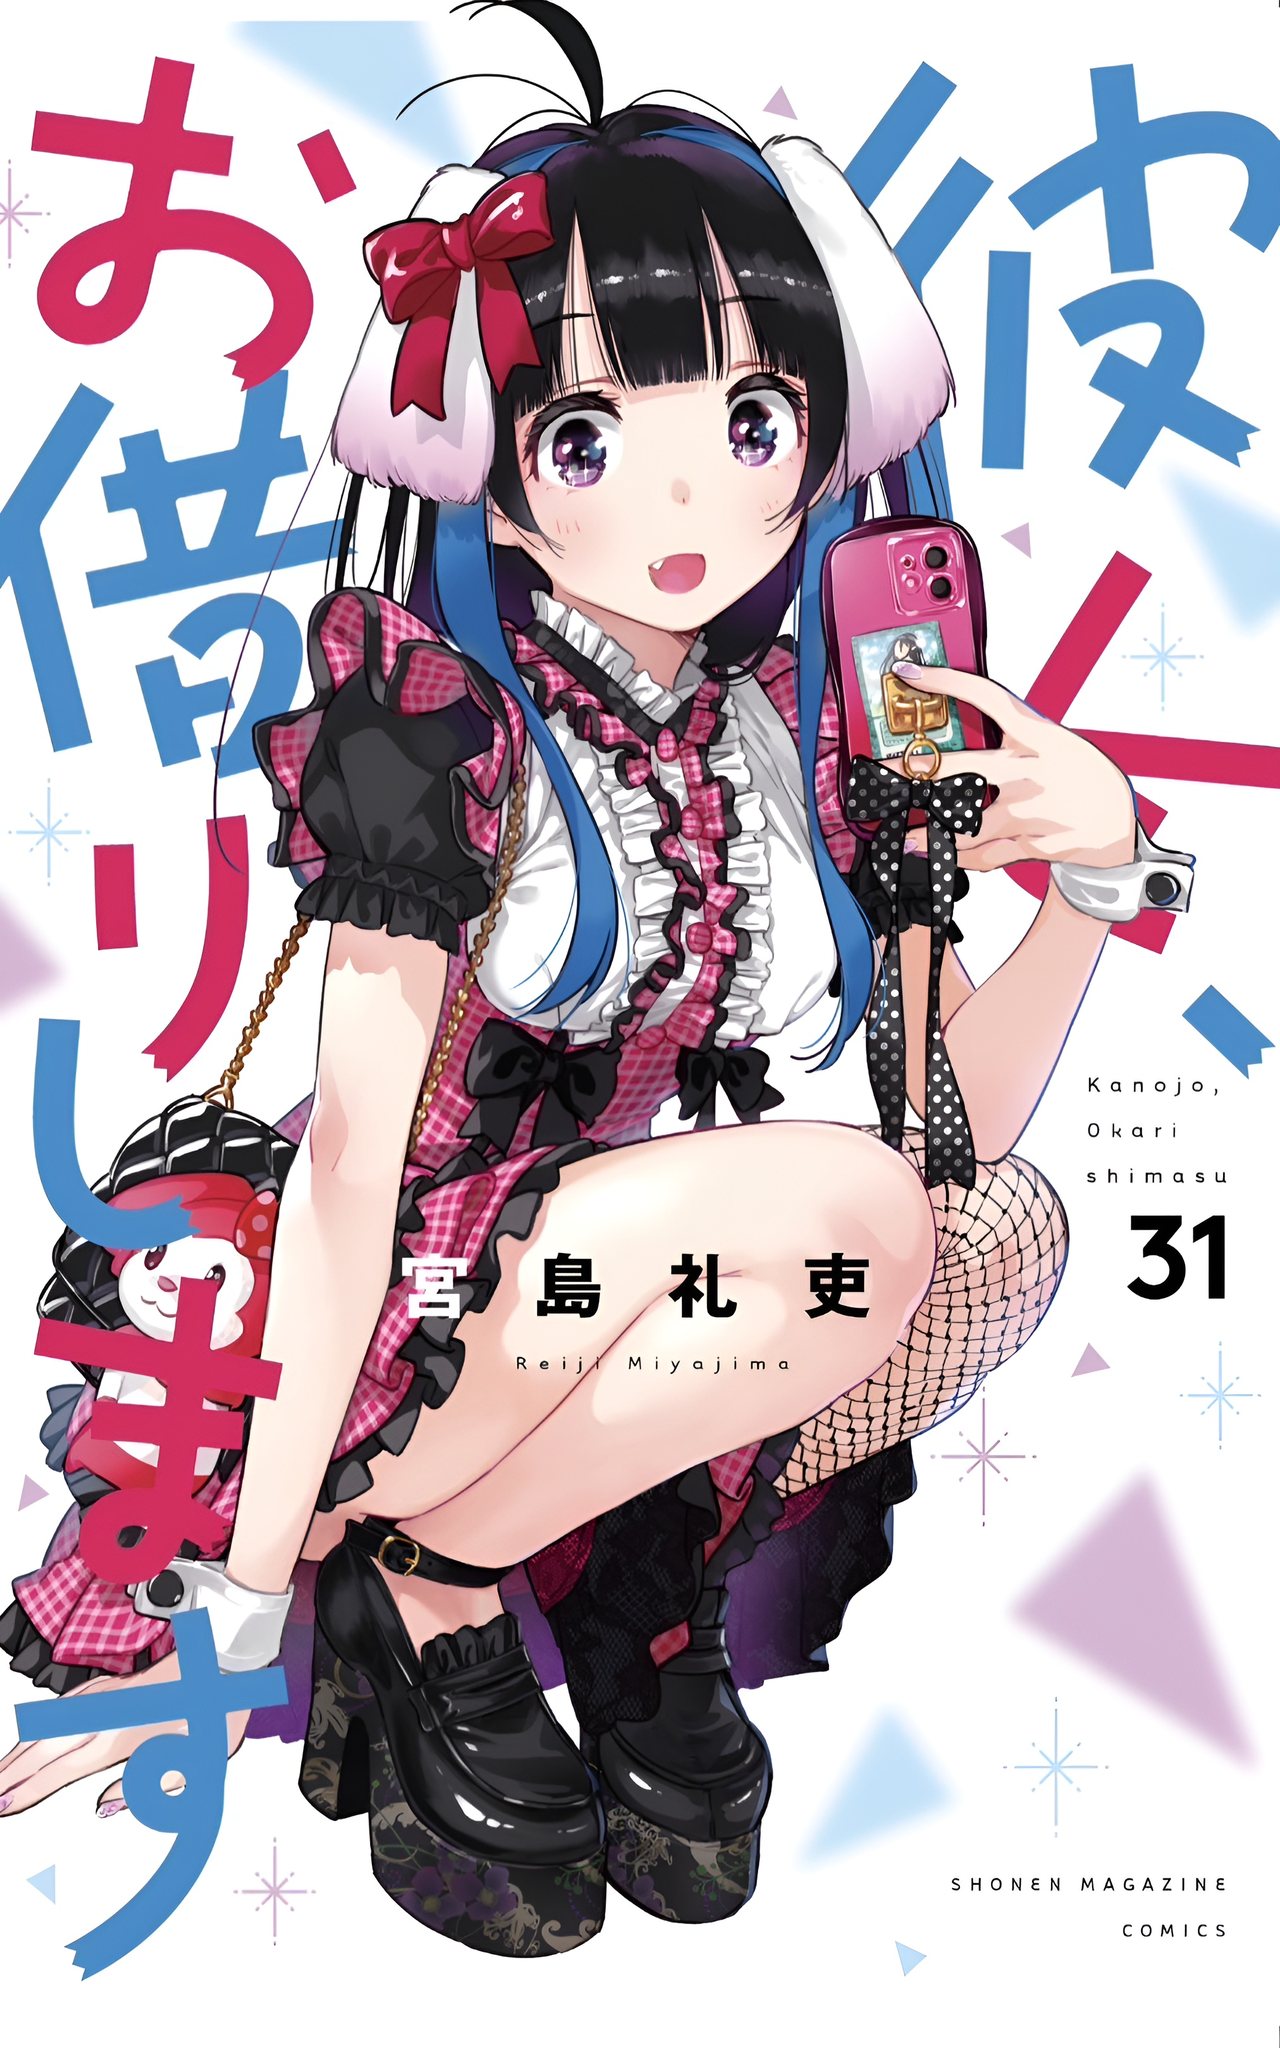 Mini Yaemori protagoniza la portada del volumen 31 de KanoKari